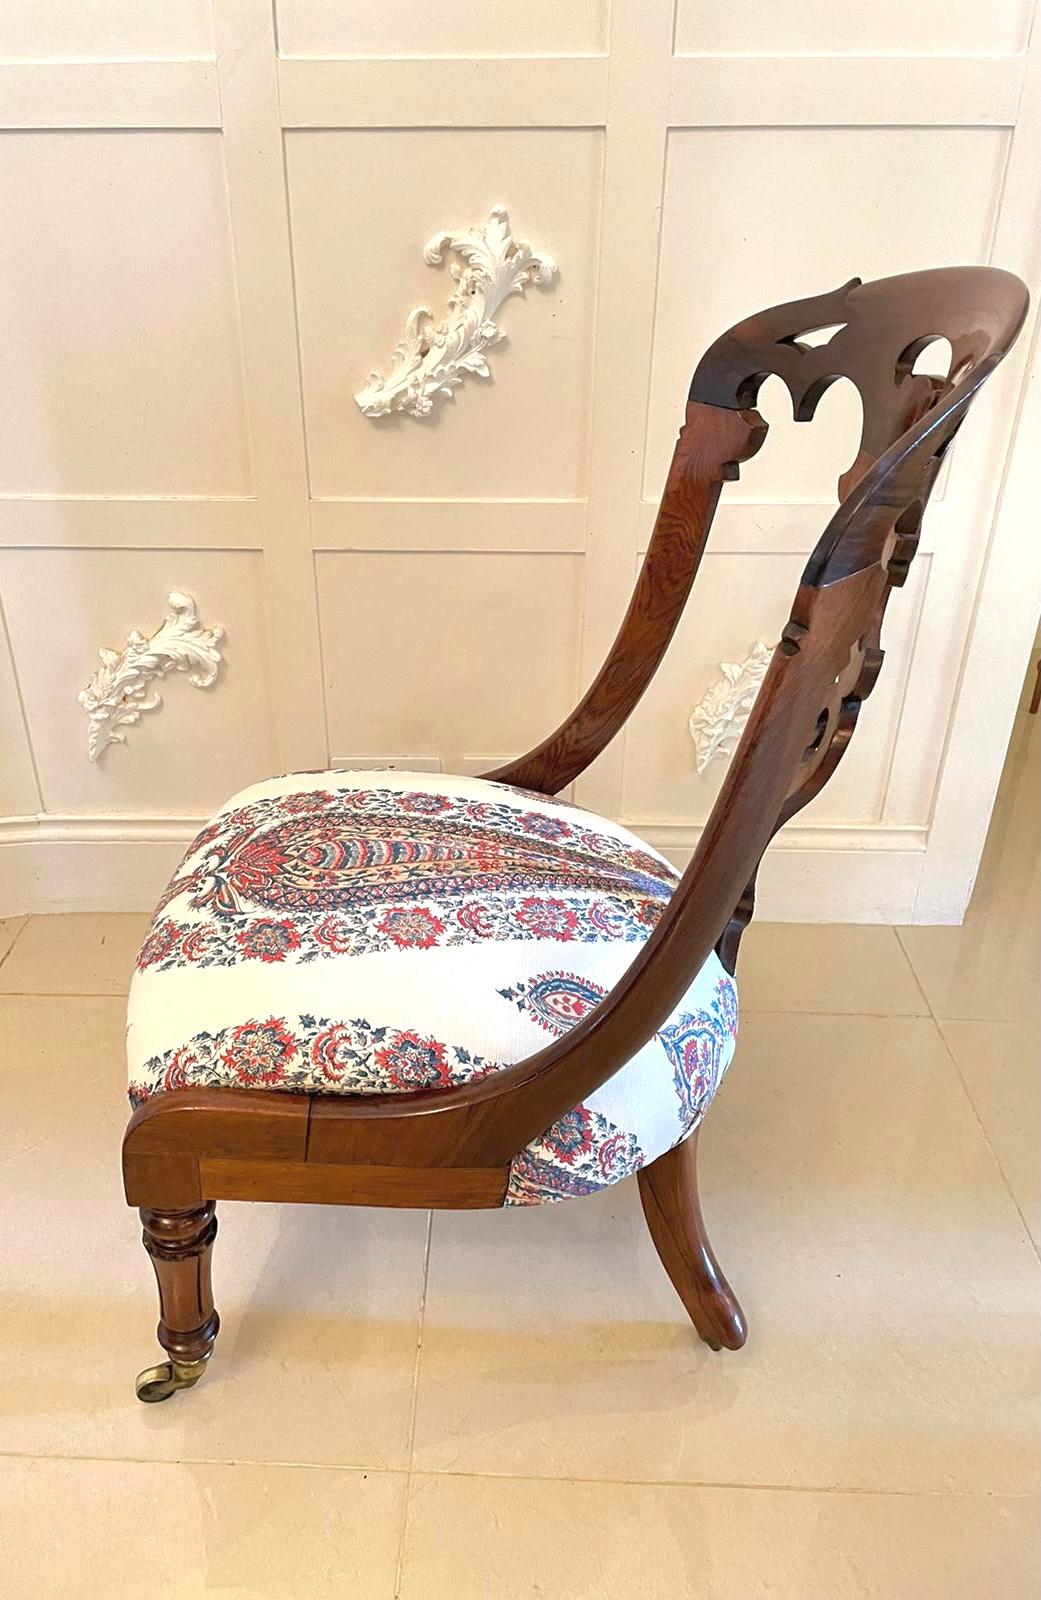 Antike viktorianische Qualität Palisander Beistellstuhl mit einer Qualität Palisander geformt geschnitzt Mitte splat förmigen oberen Schiene, neu gepolstert Sitz in einer Qualität Stoff und stehen auf attraktive Tulpe geformt gedrehten Beinen mit